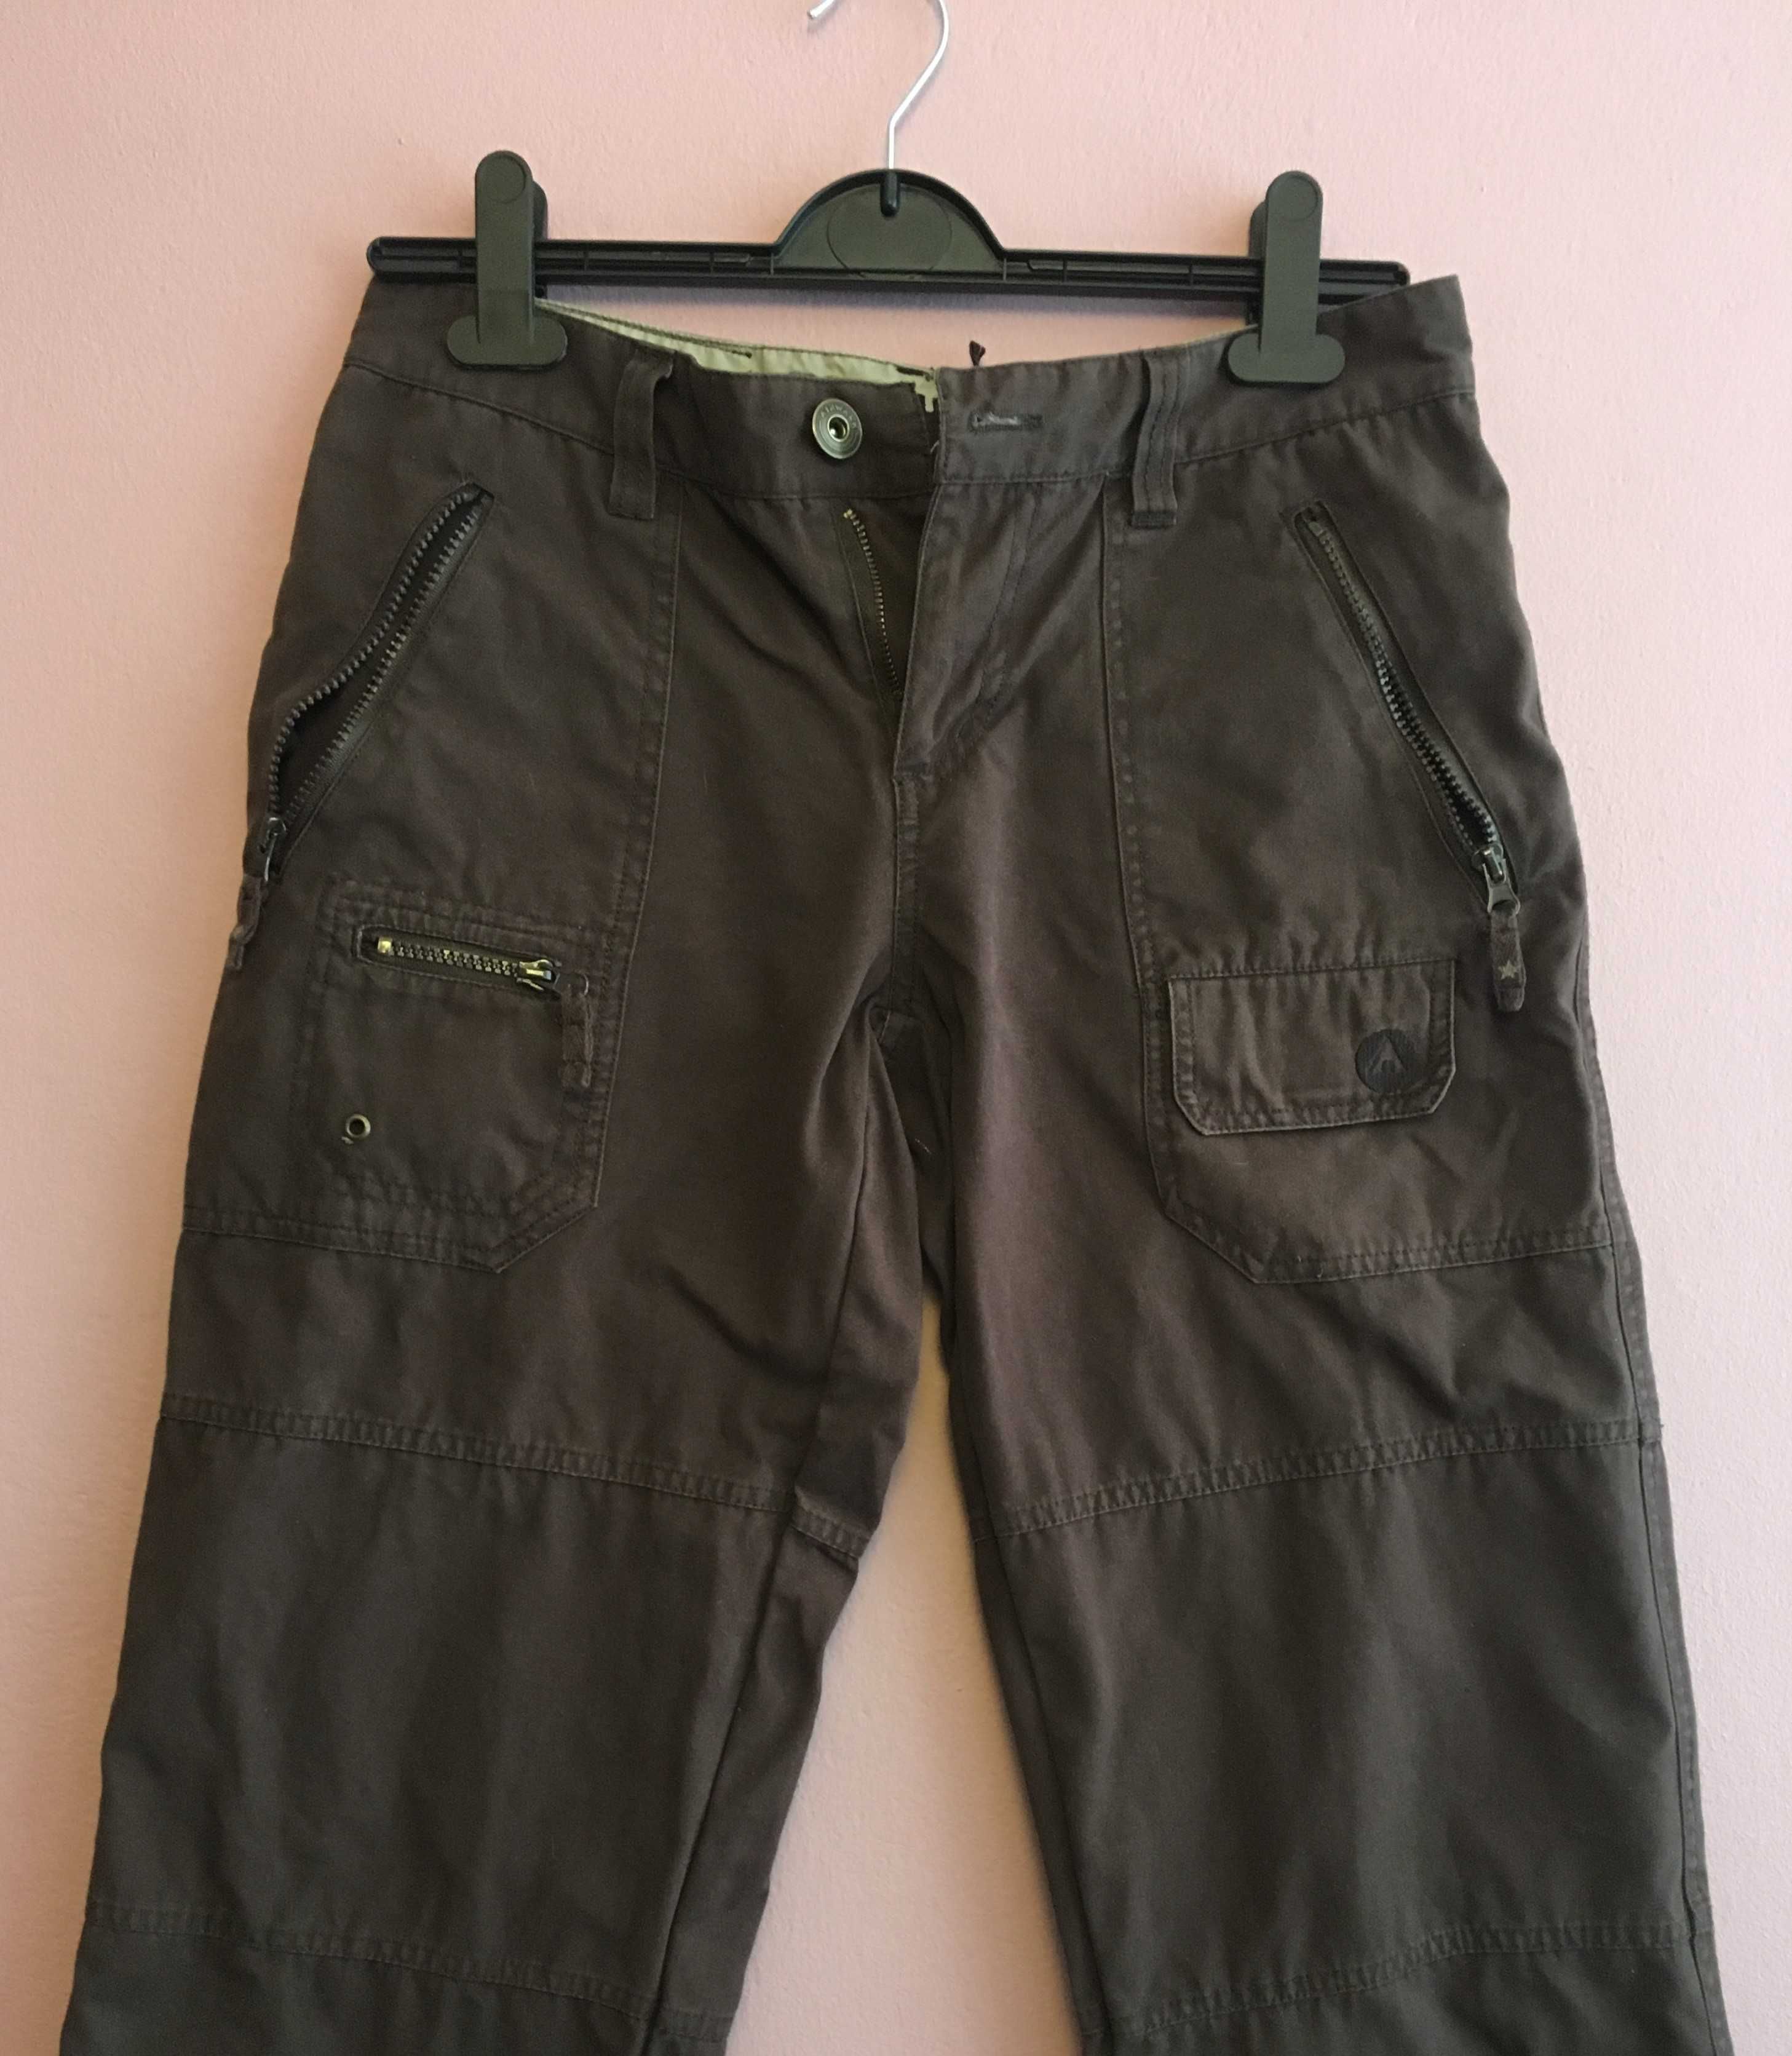 Spodnie z szerokimi nogawkami w stylu vintage od Airwalk